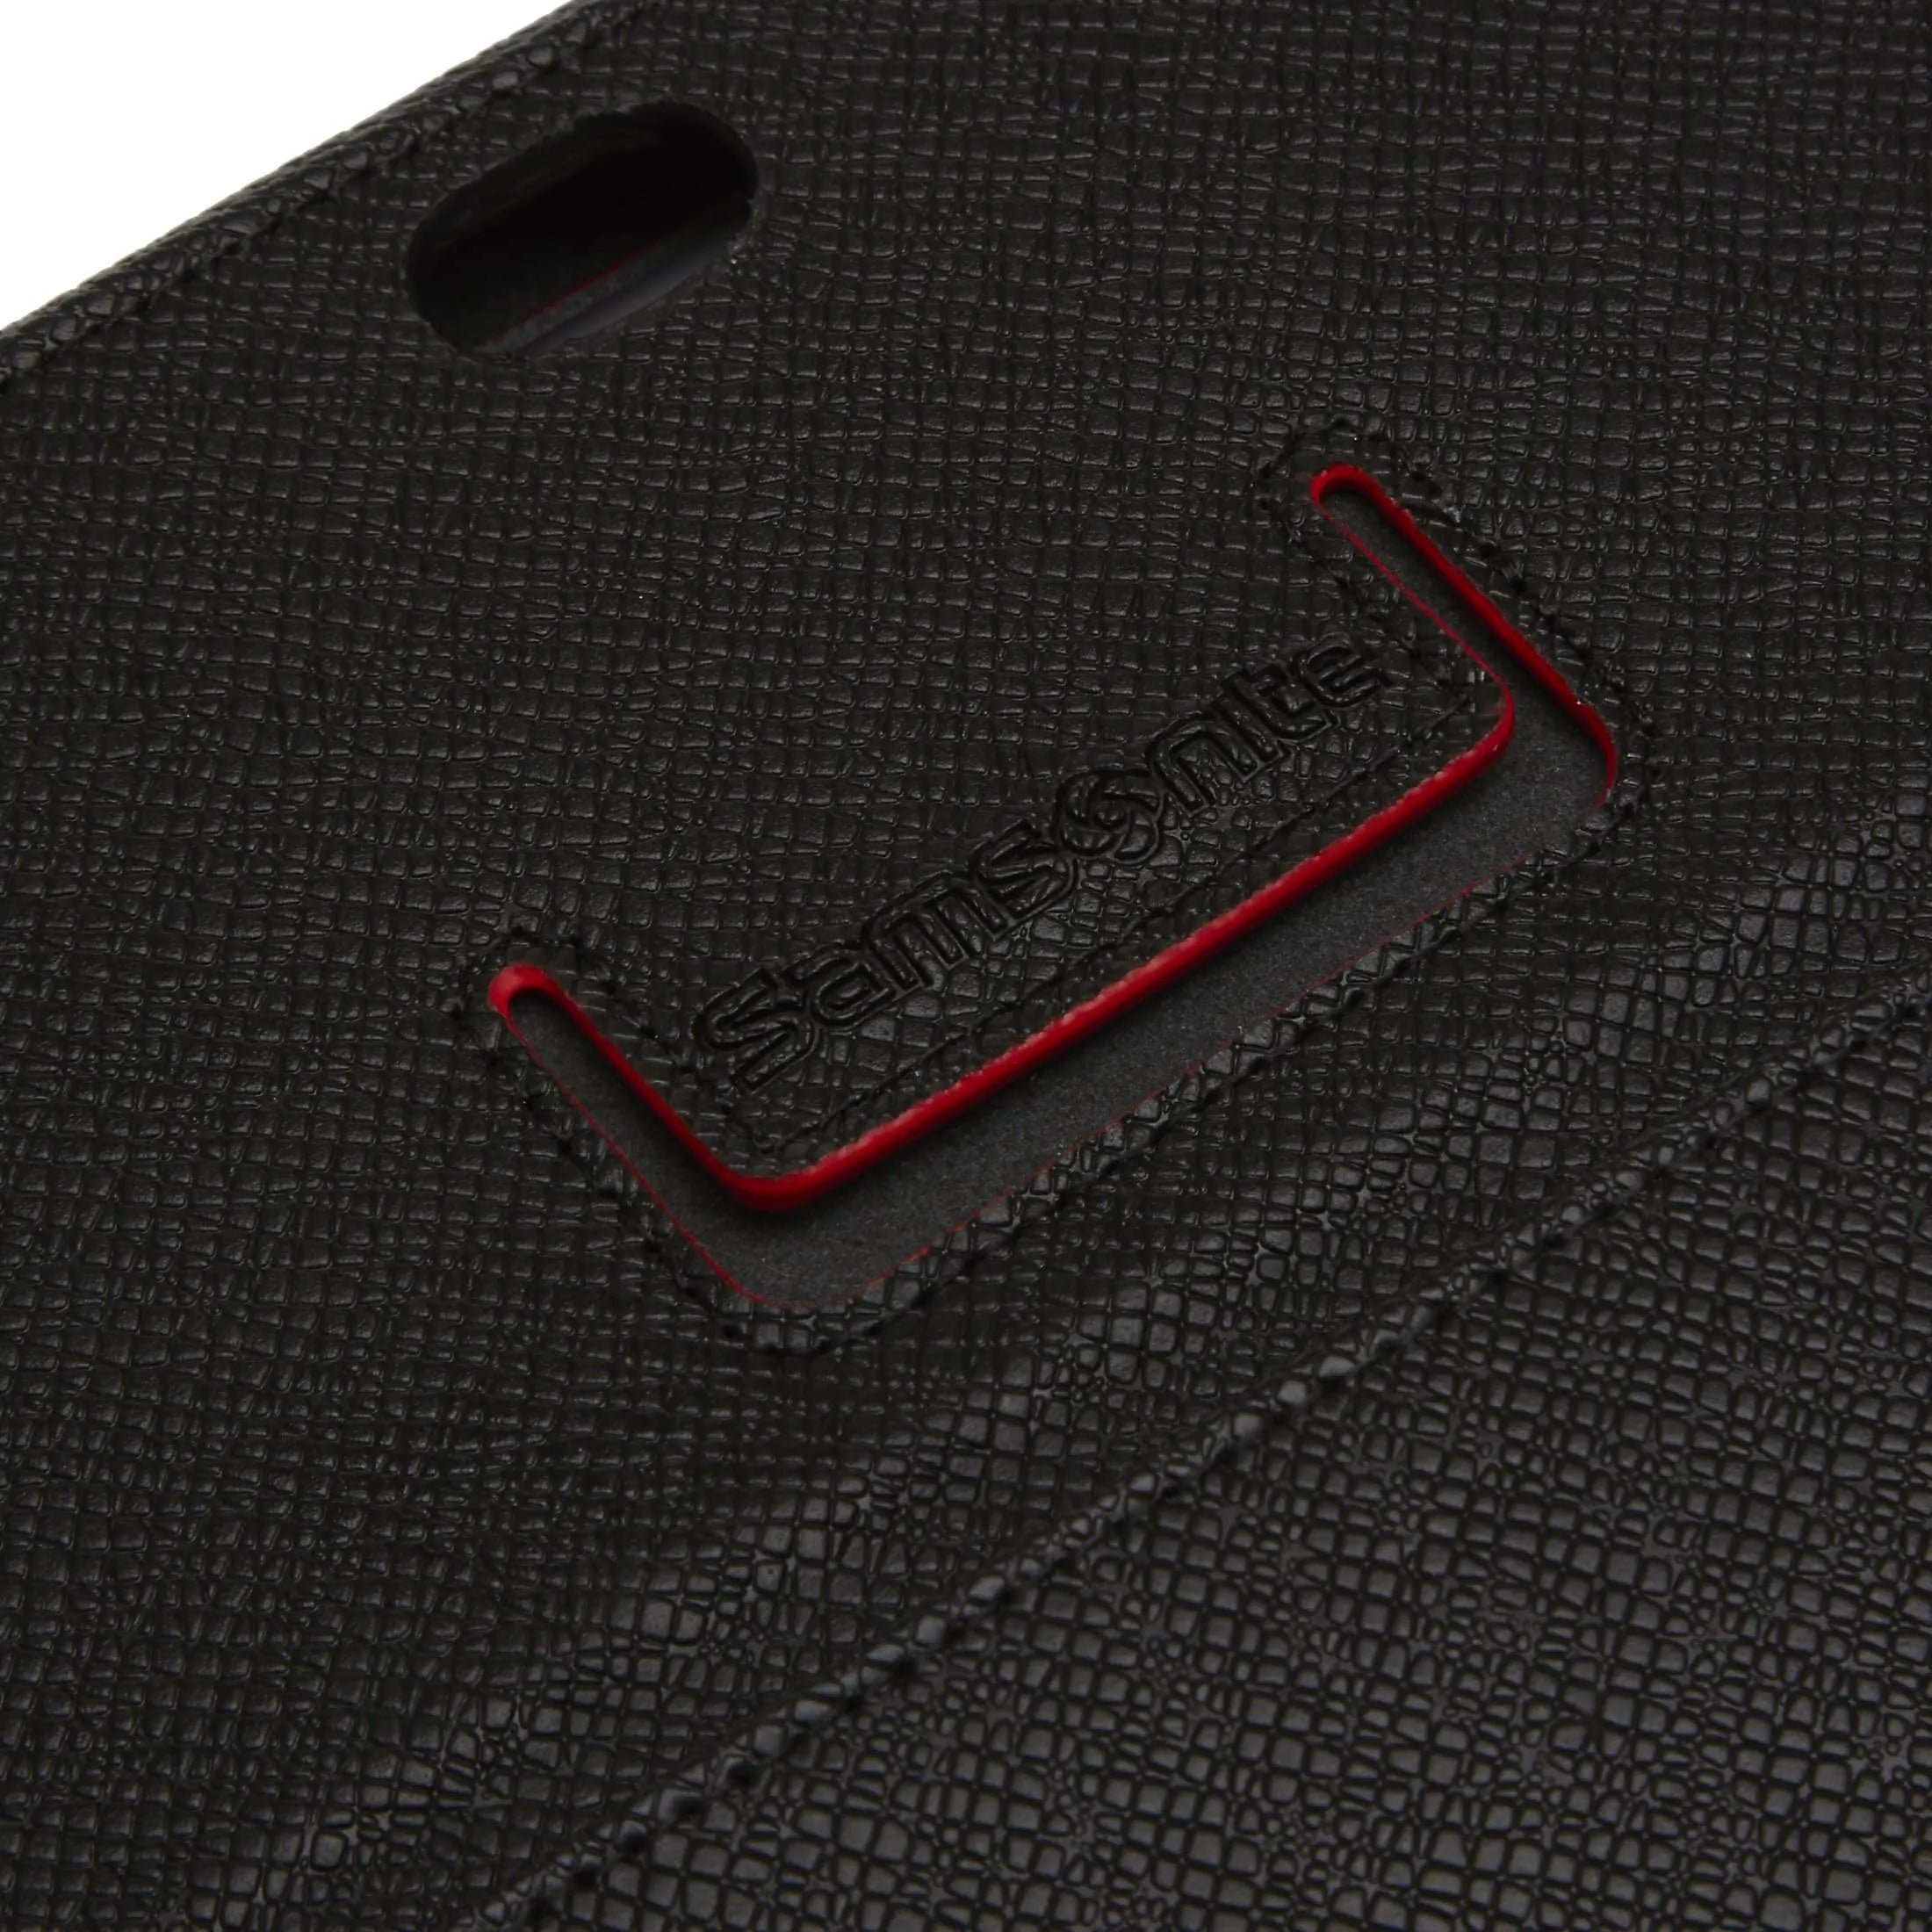 Samsonite Mobile Pro Leather Portofolio 10.1 tablet sleeve 26 cm - dark brown